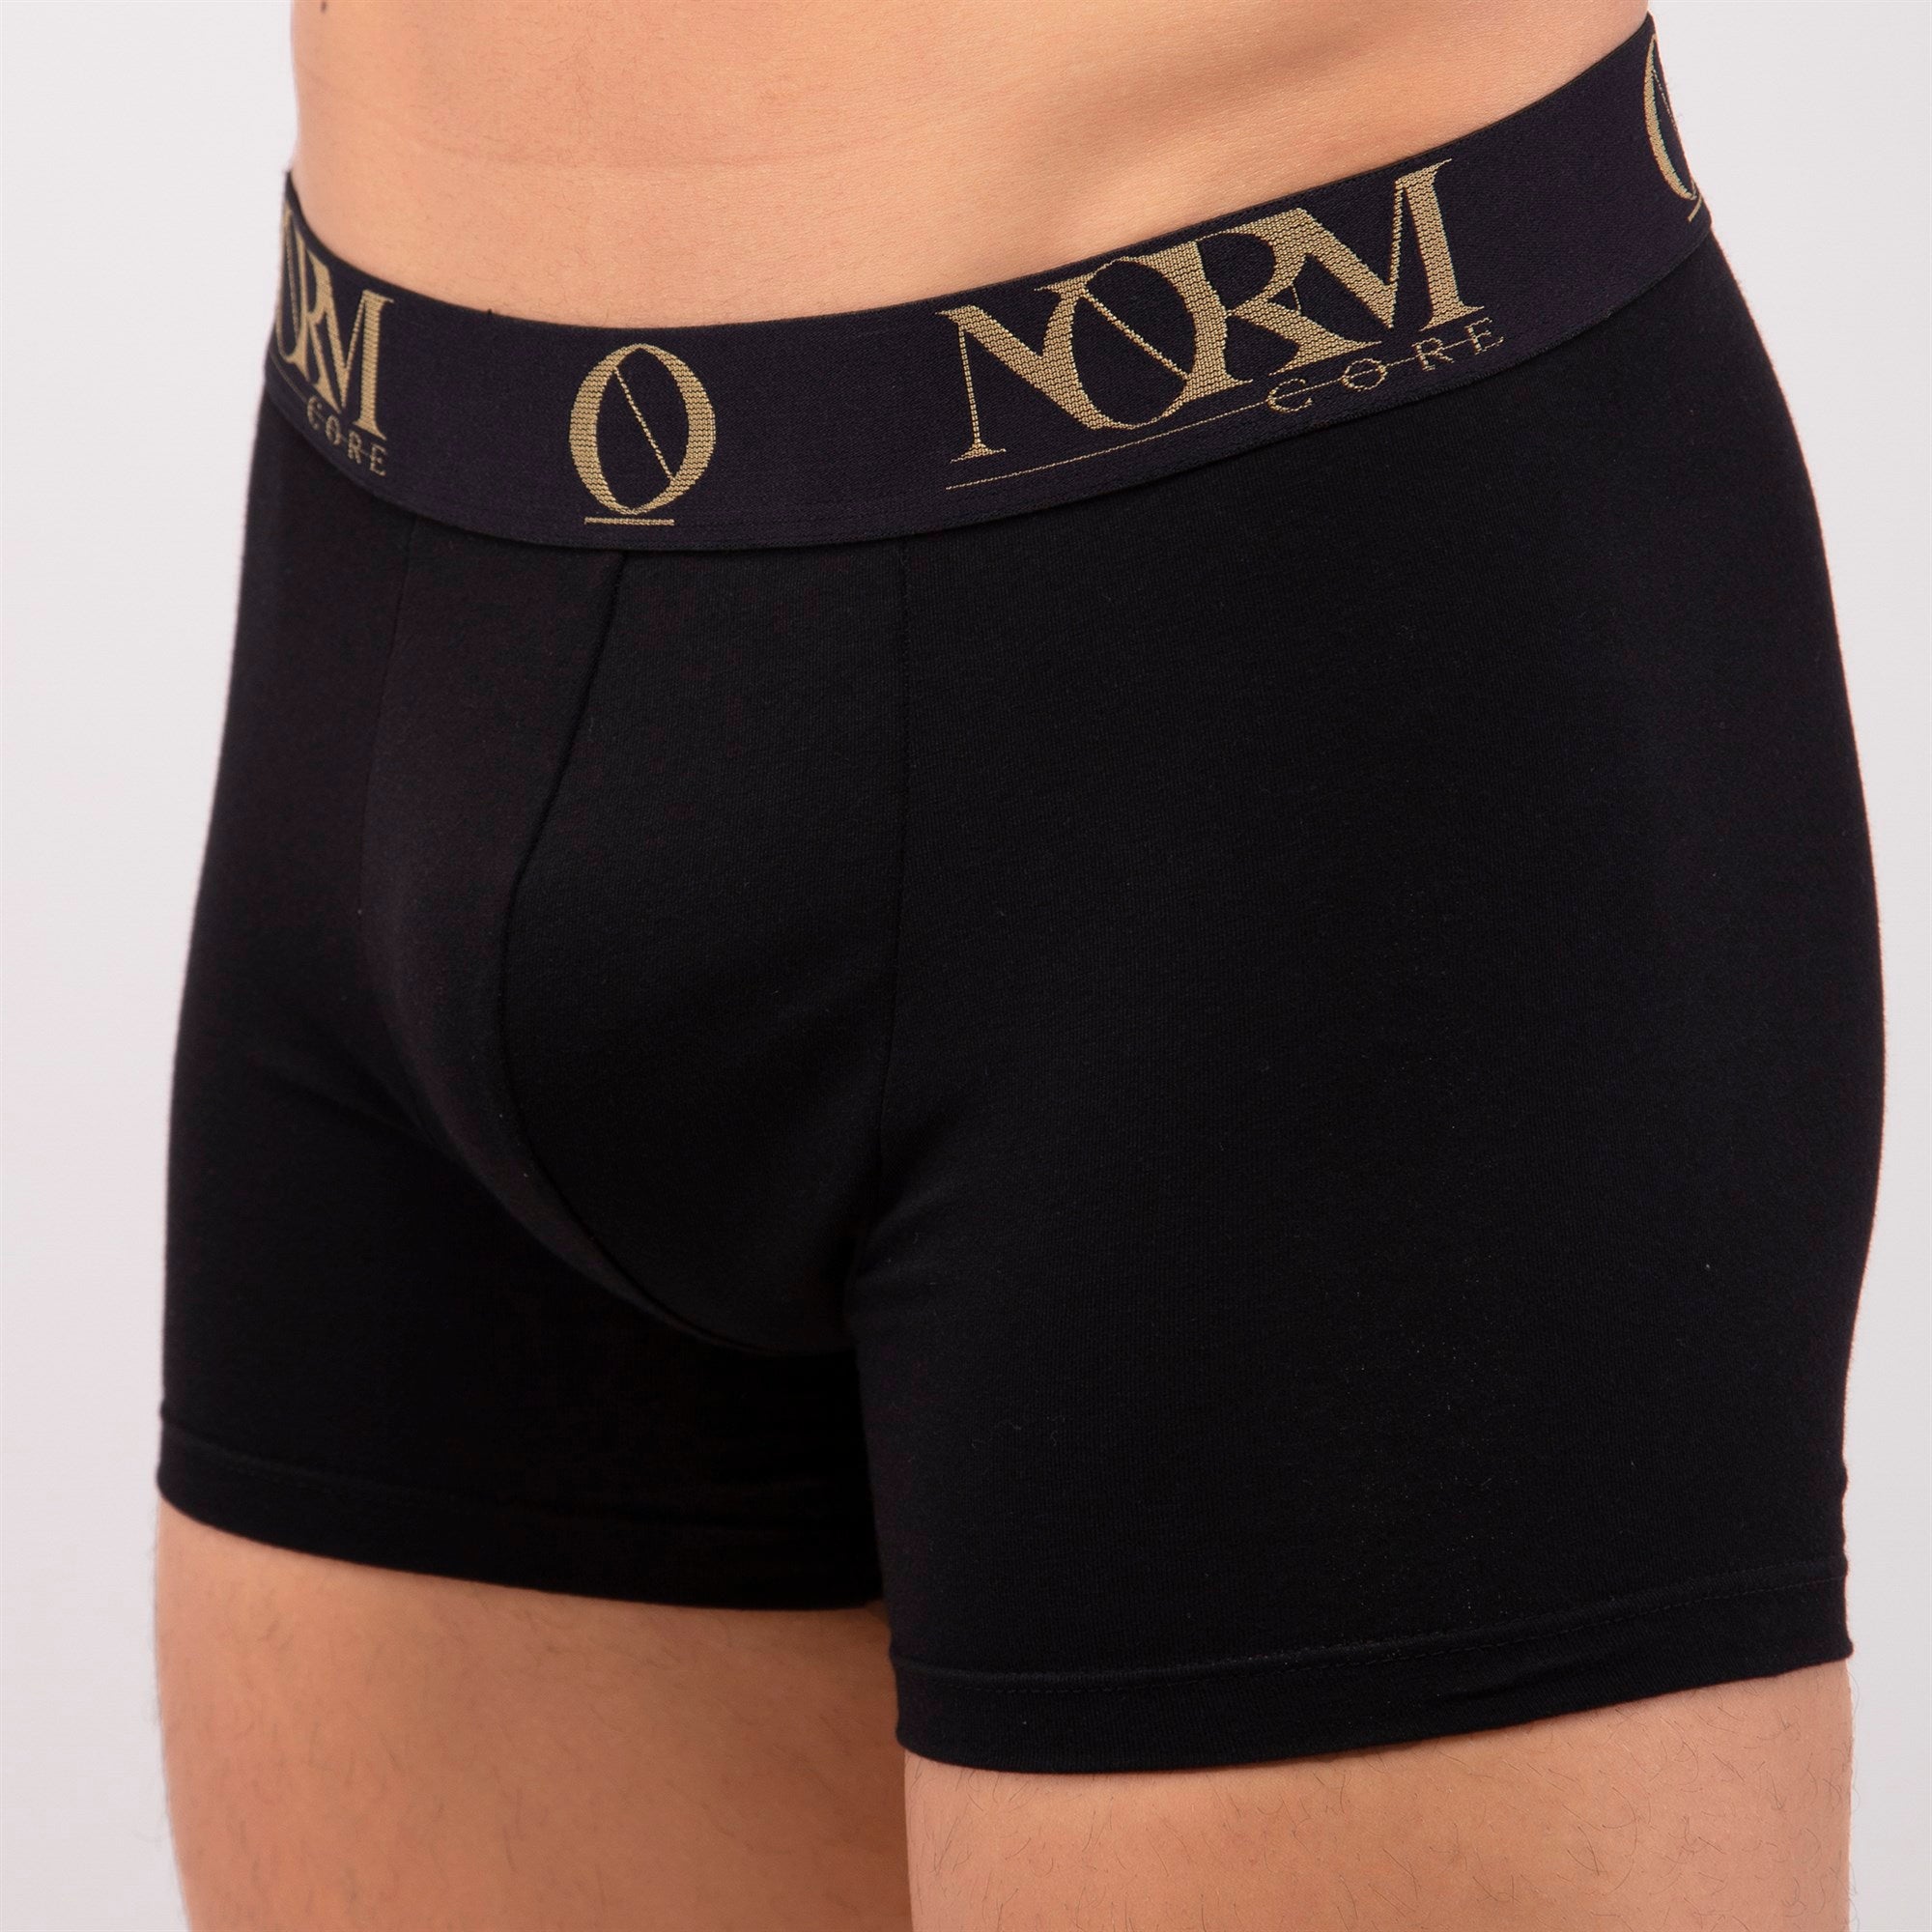 Normcore Cotton Innerwear - Black Trunk with Gold Waistband Underwear